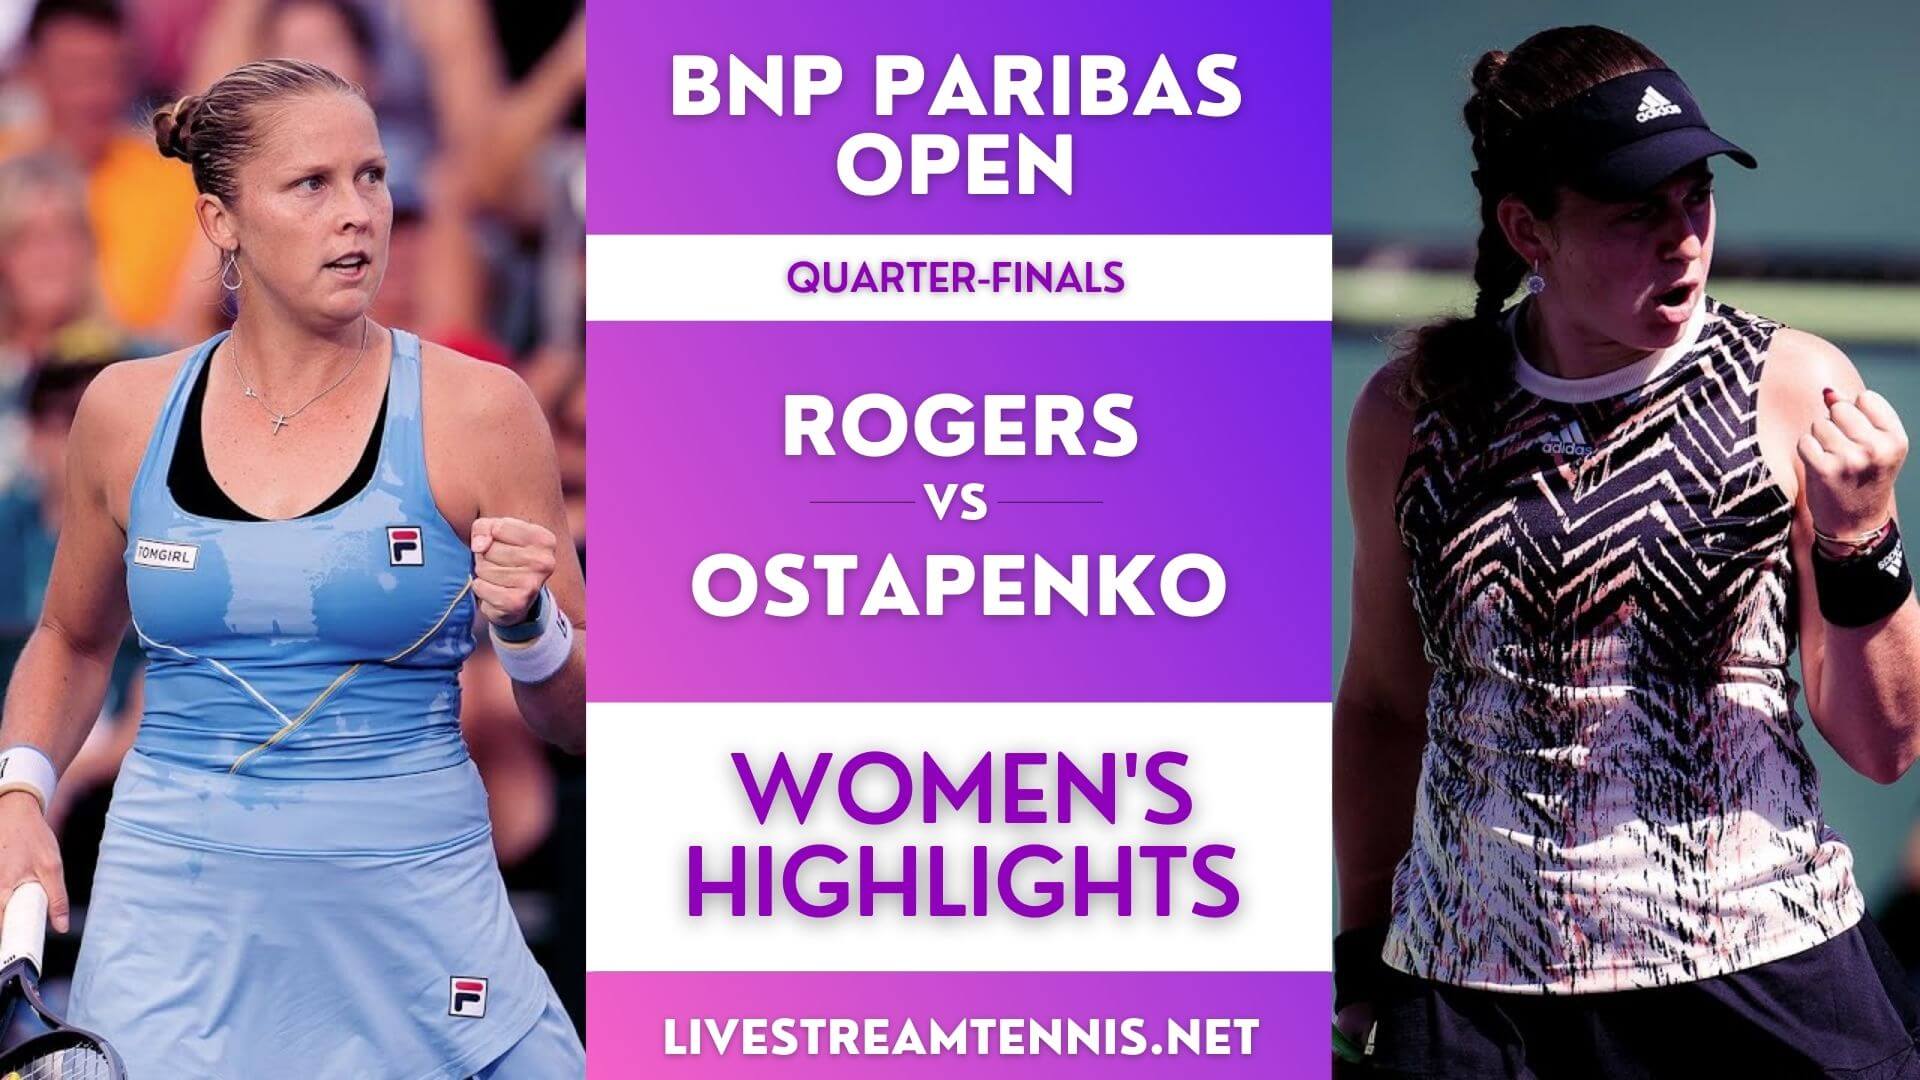 BNP Paribas Open Women Quarter Final 1 Highlights 2021